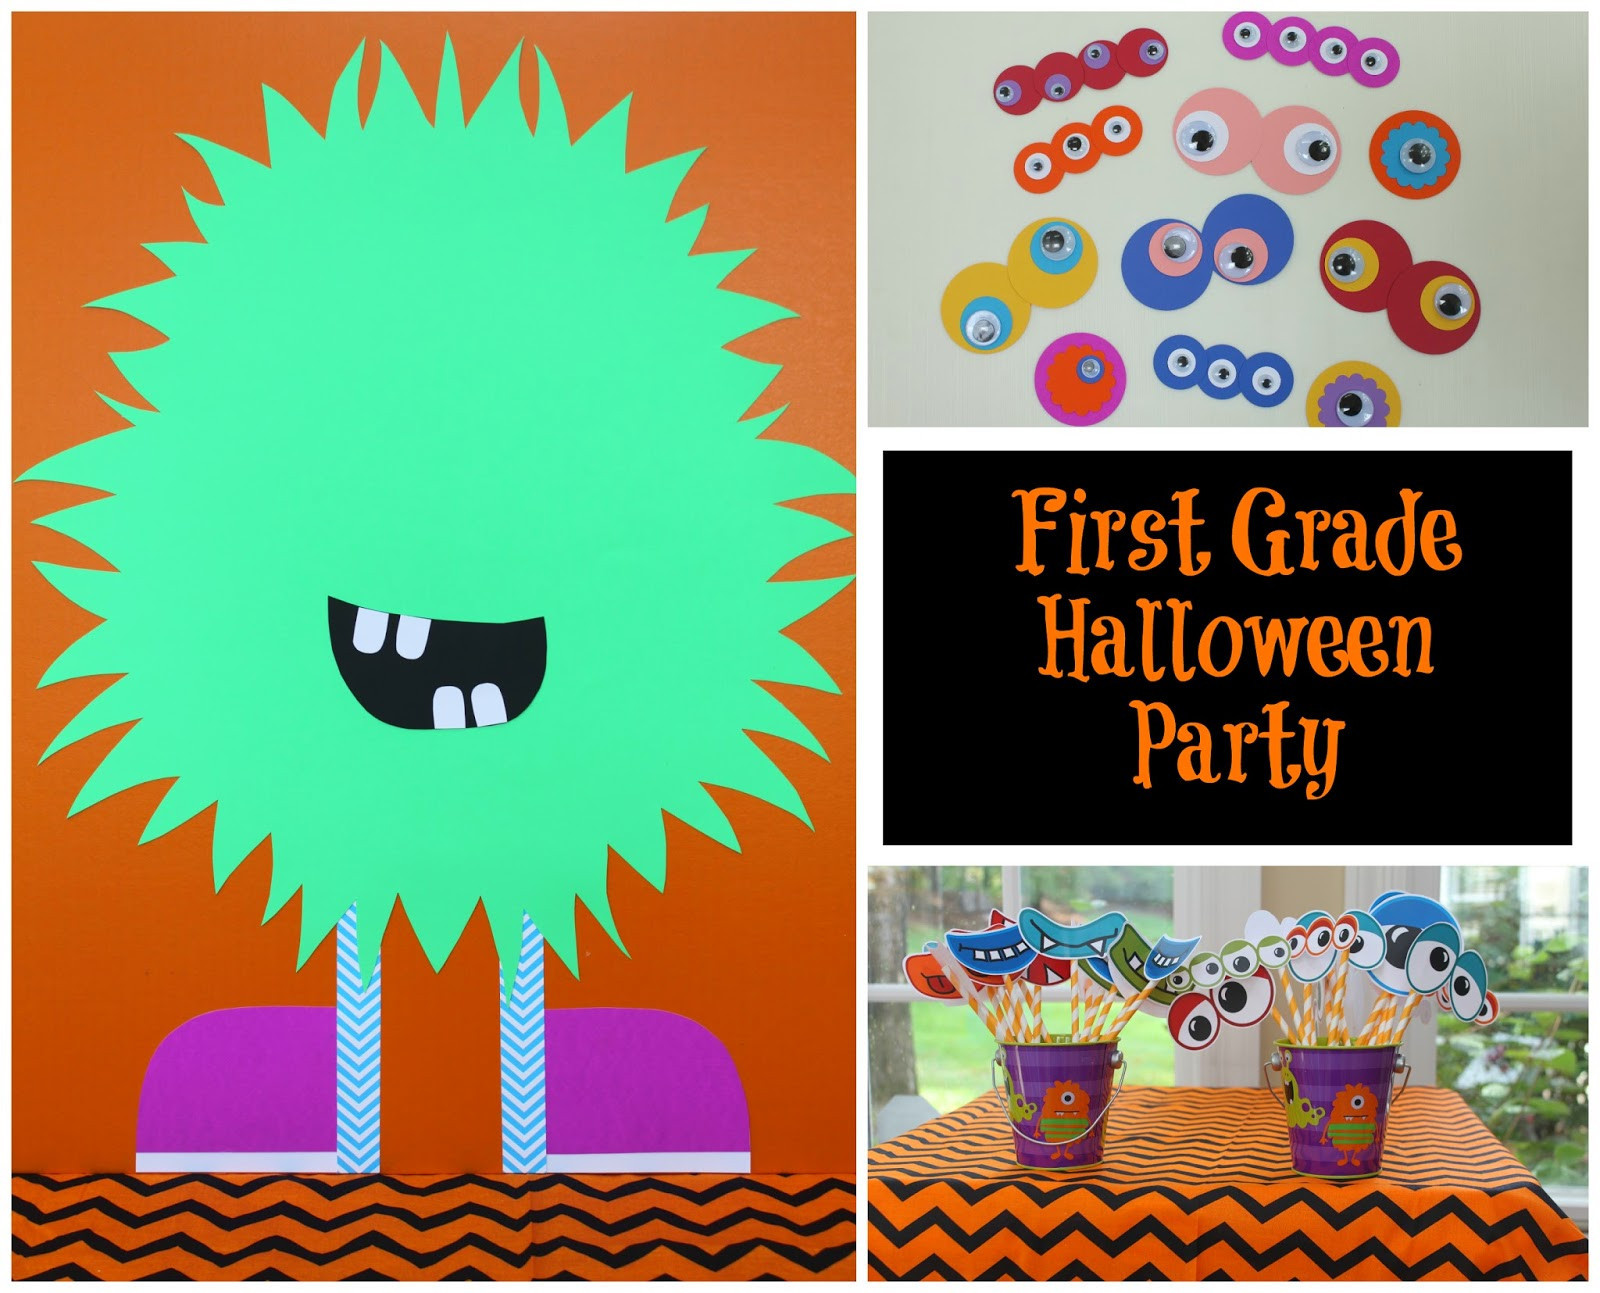 3Rd Grade Halloween Party Ideas
 23 Best Third Grade Halloween Party Ideas Best Party